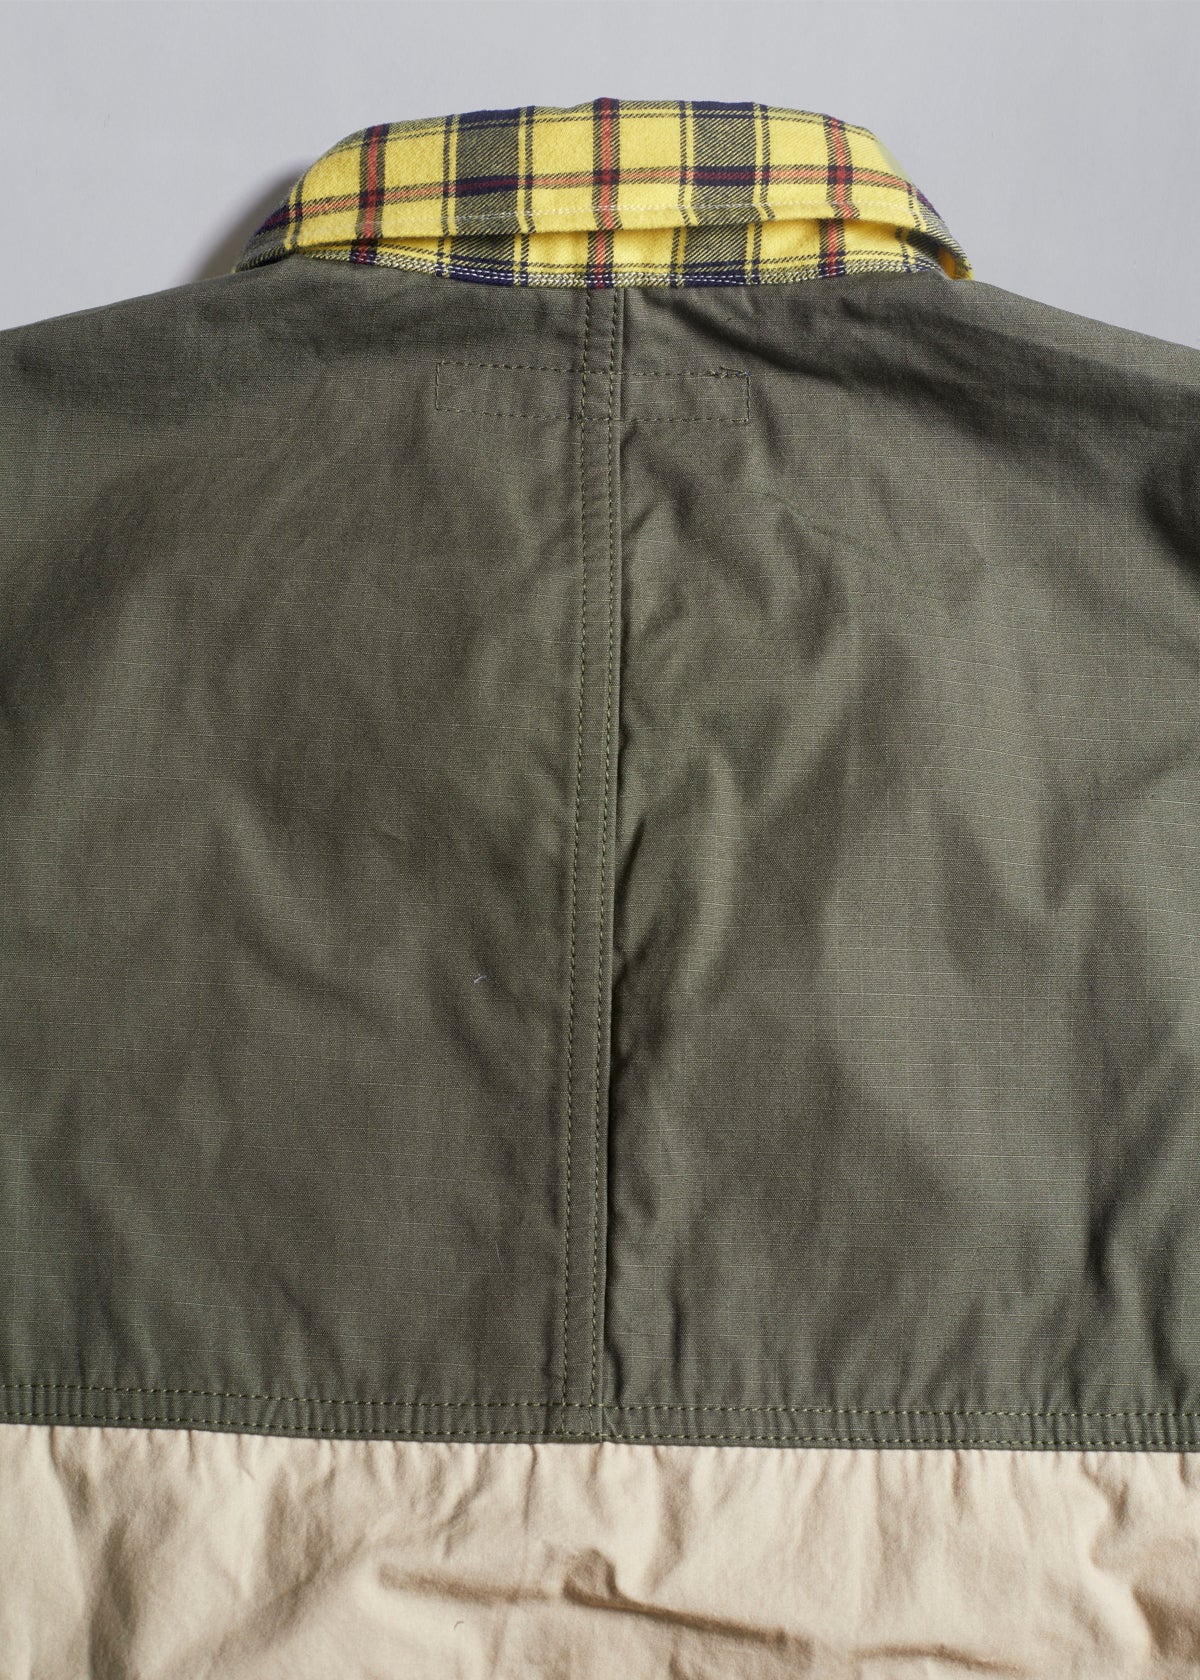 Tartan & Camo Patchwork Overshirt SS2020 - X-Large